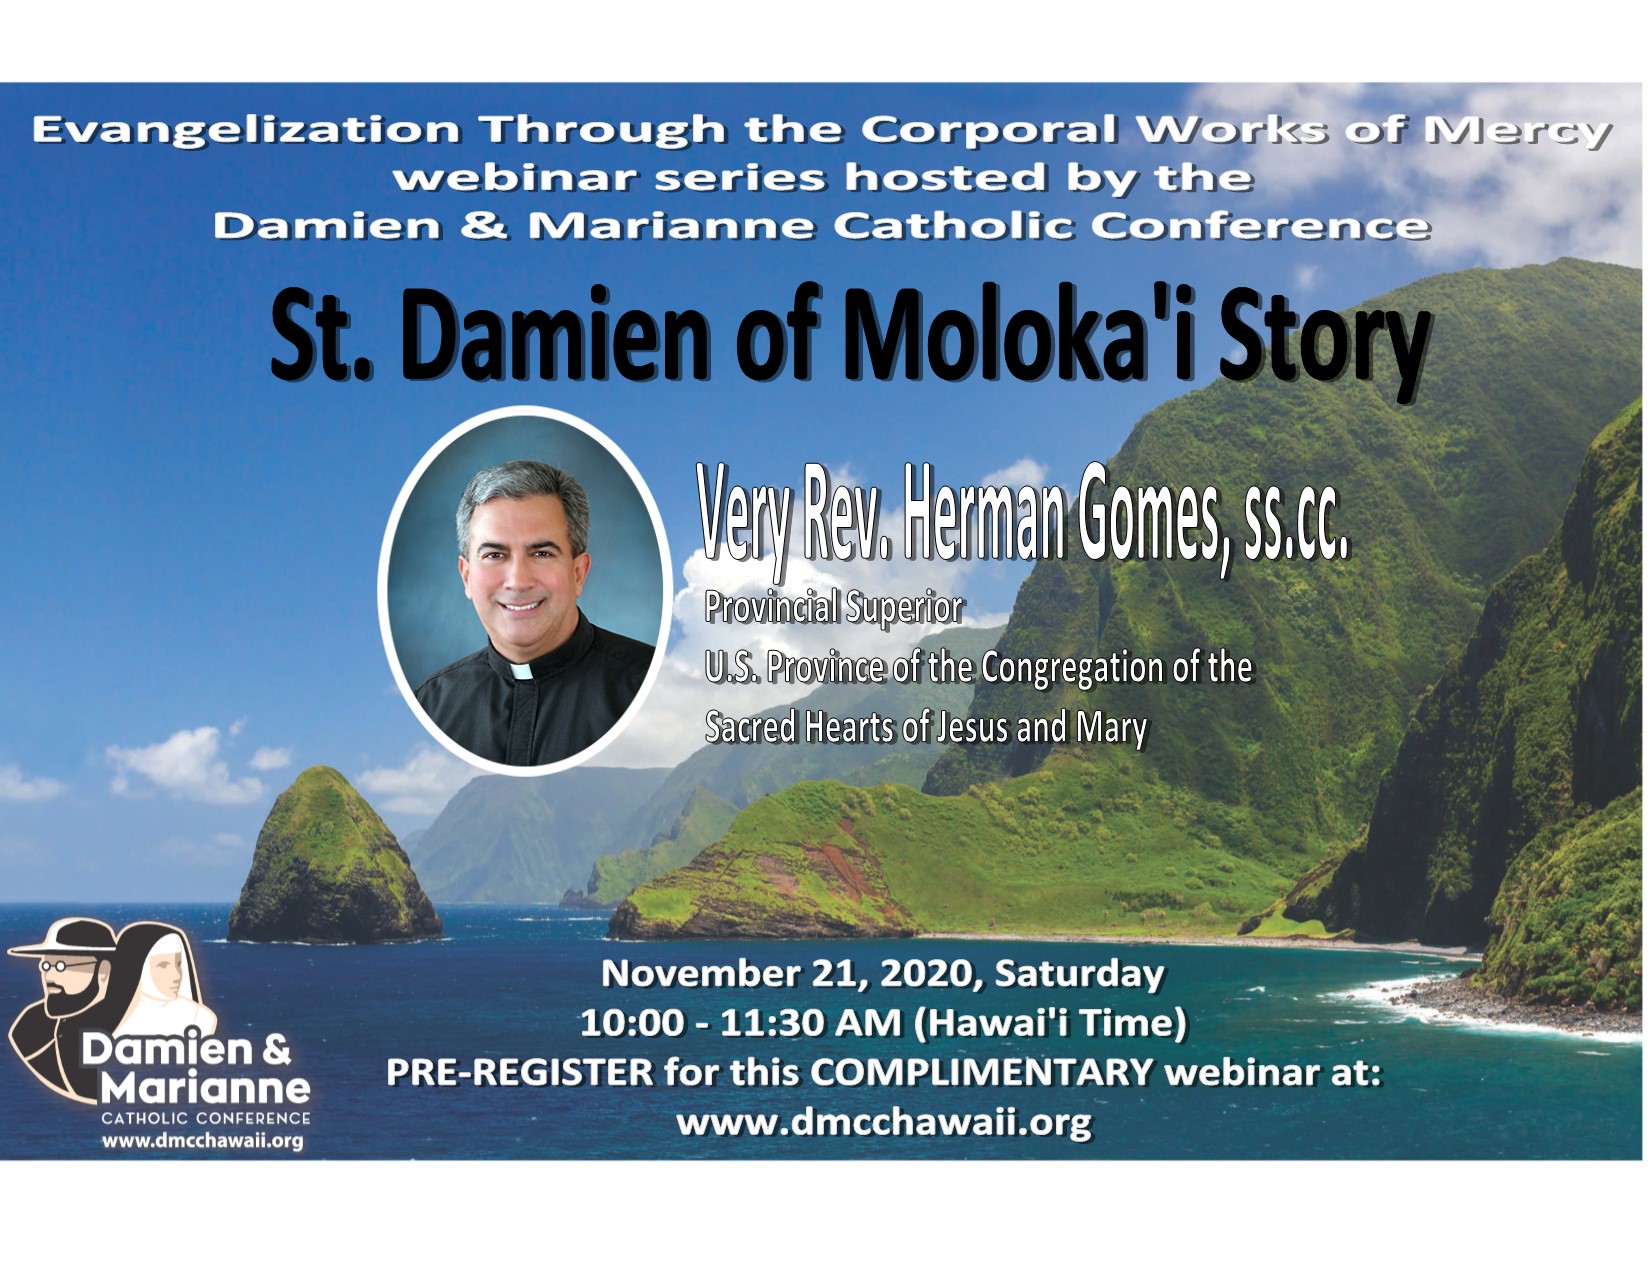 St. Damien of Moloka’i Story